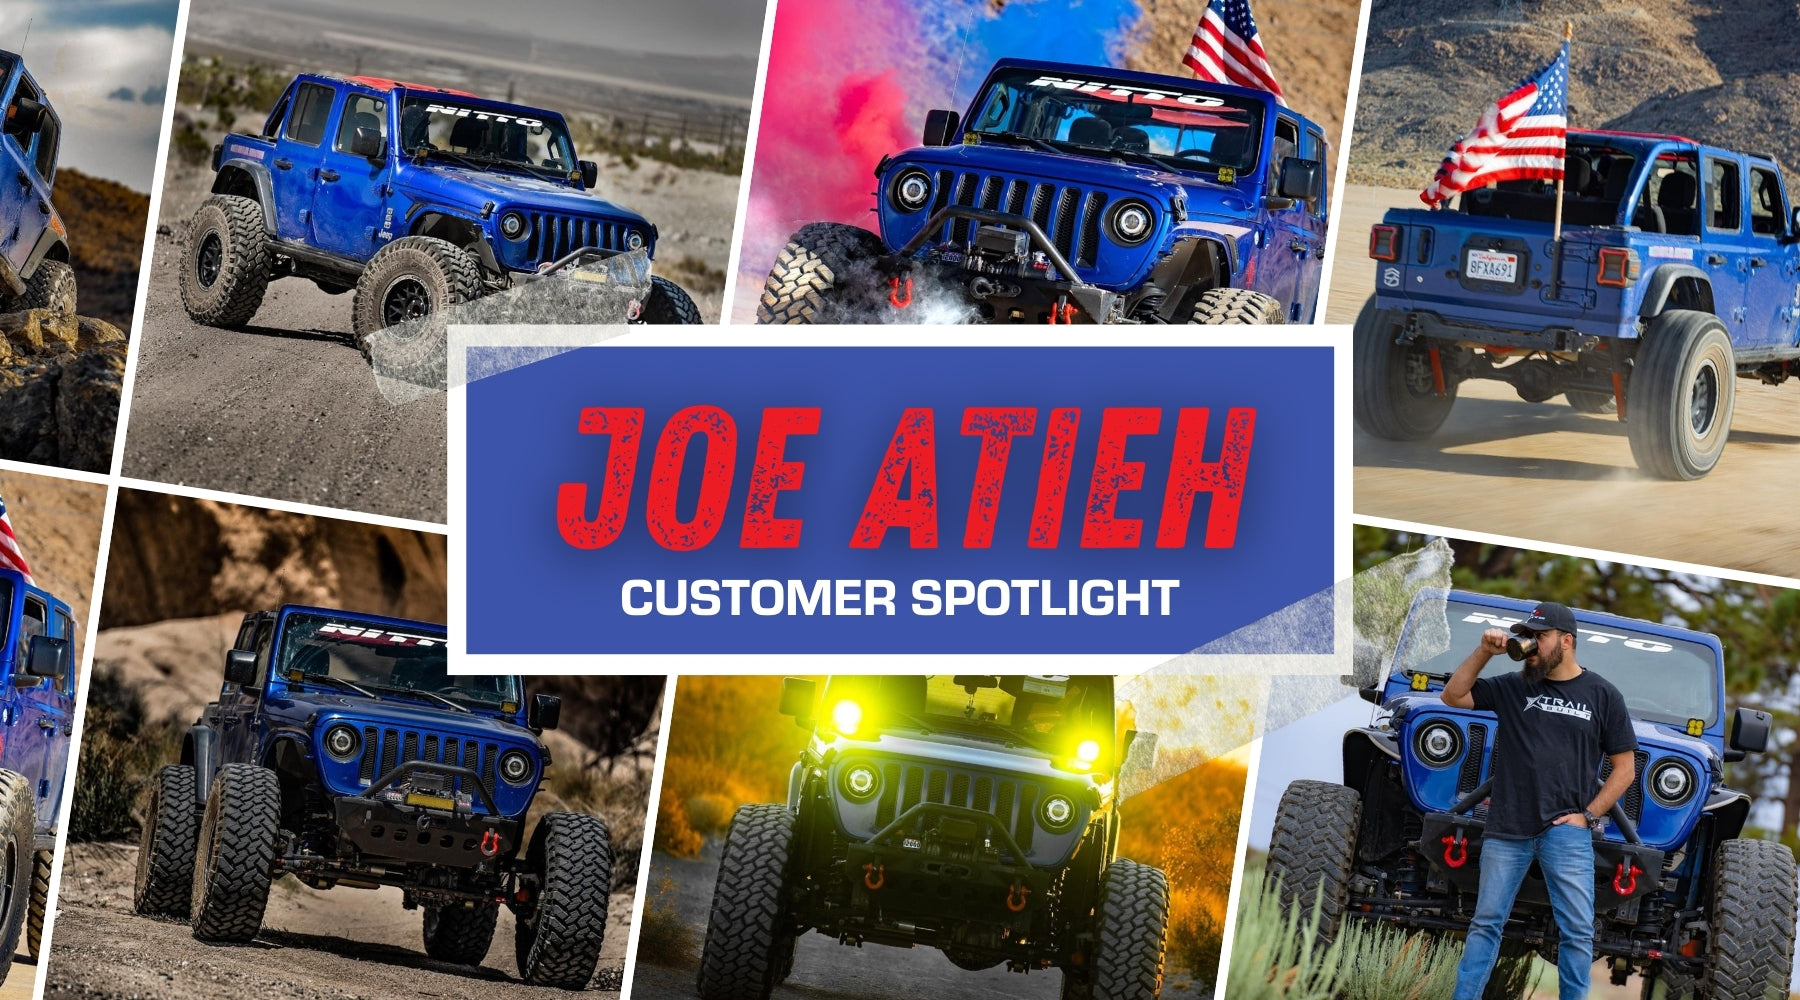 Customer Spotlight: Joe Atieh